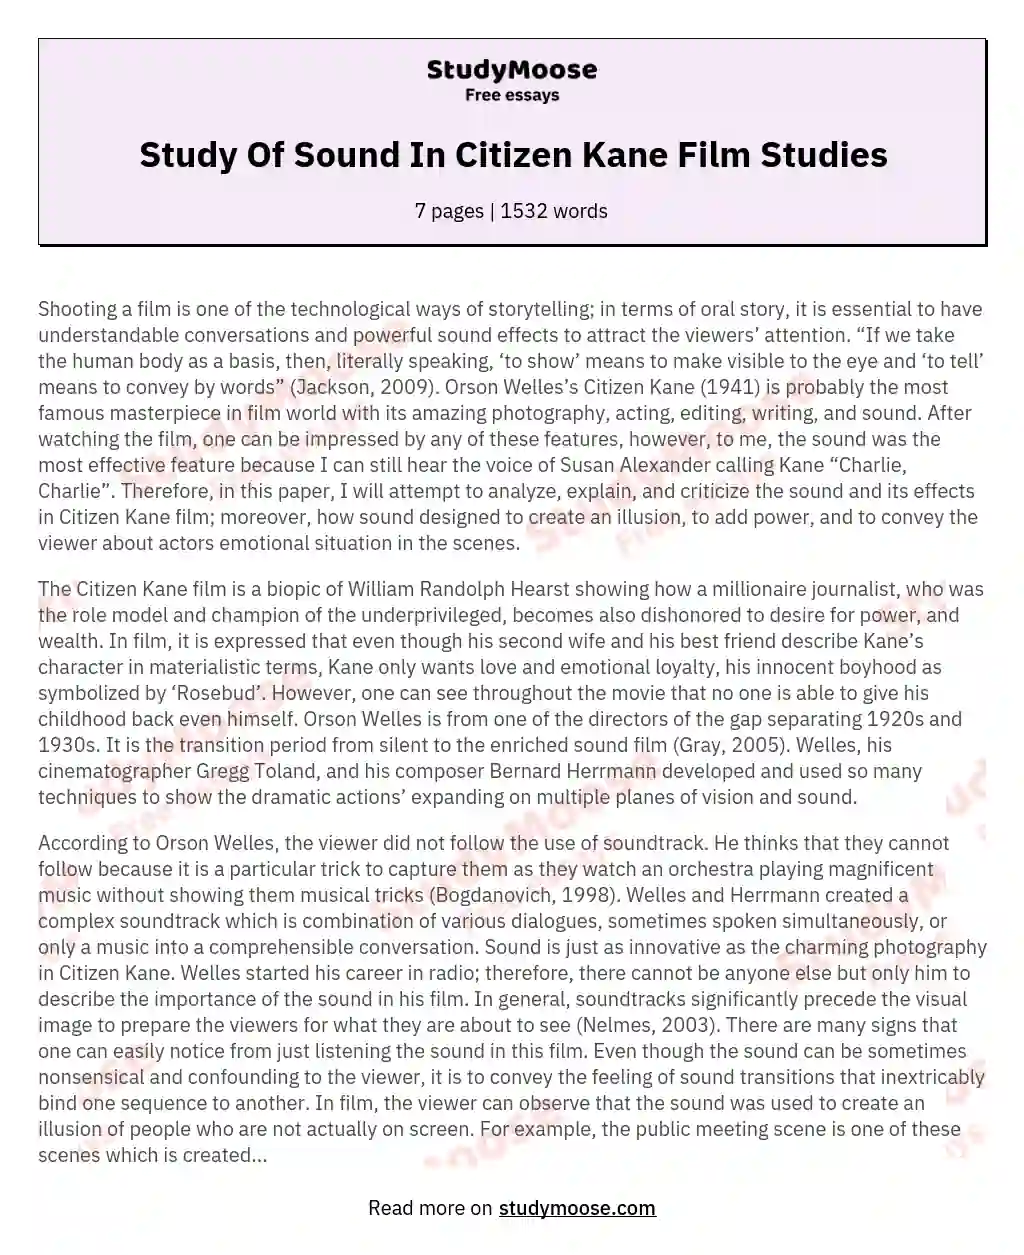 Study Of Sound In Citizen Kane Film Studies essay